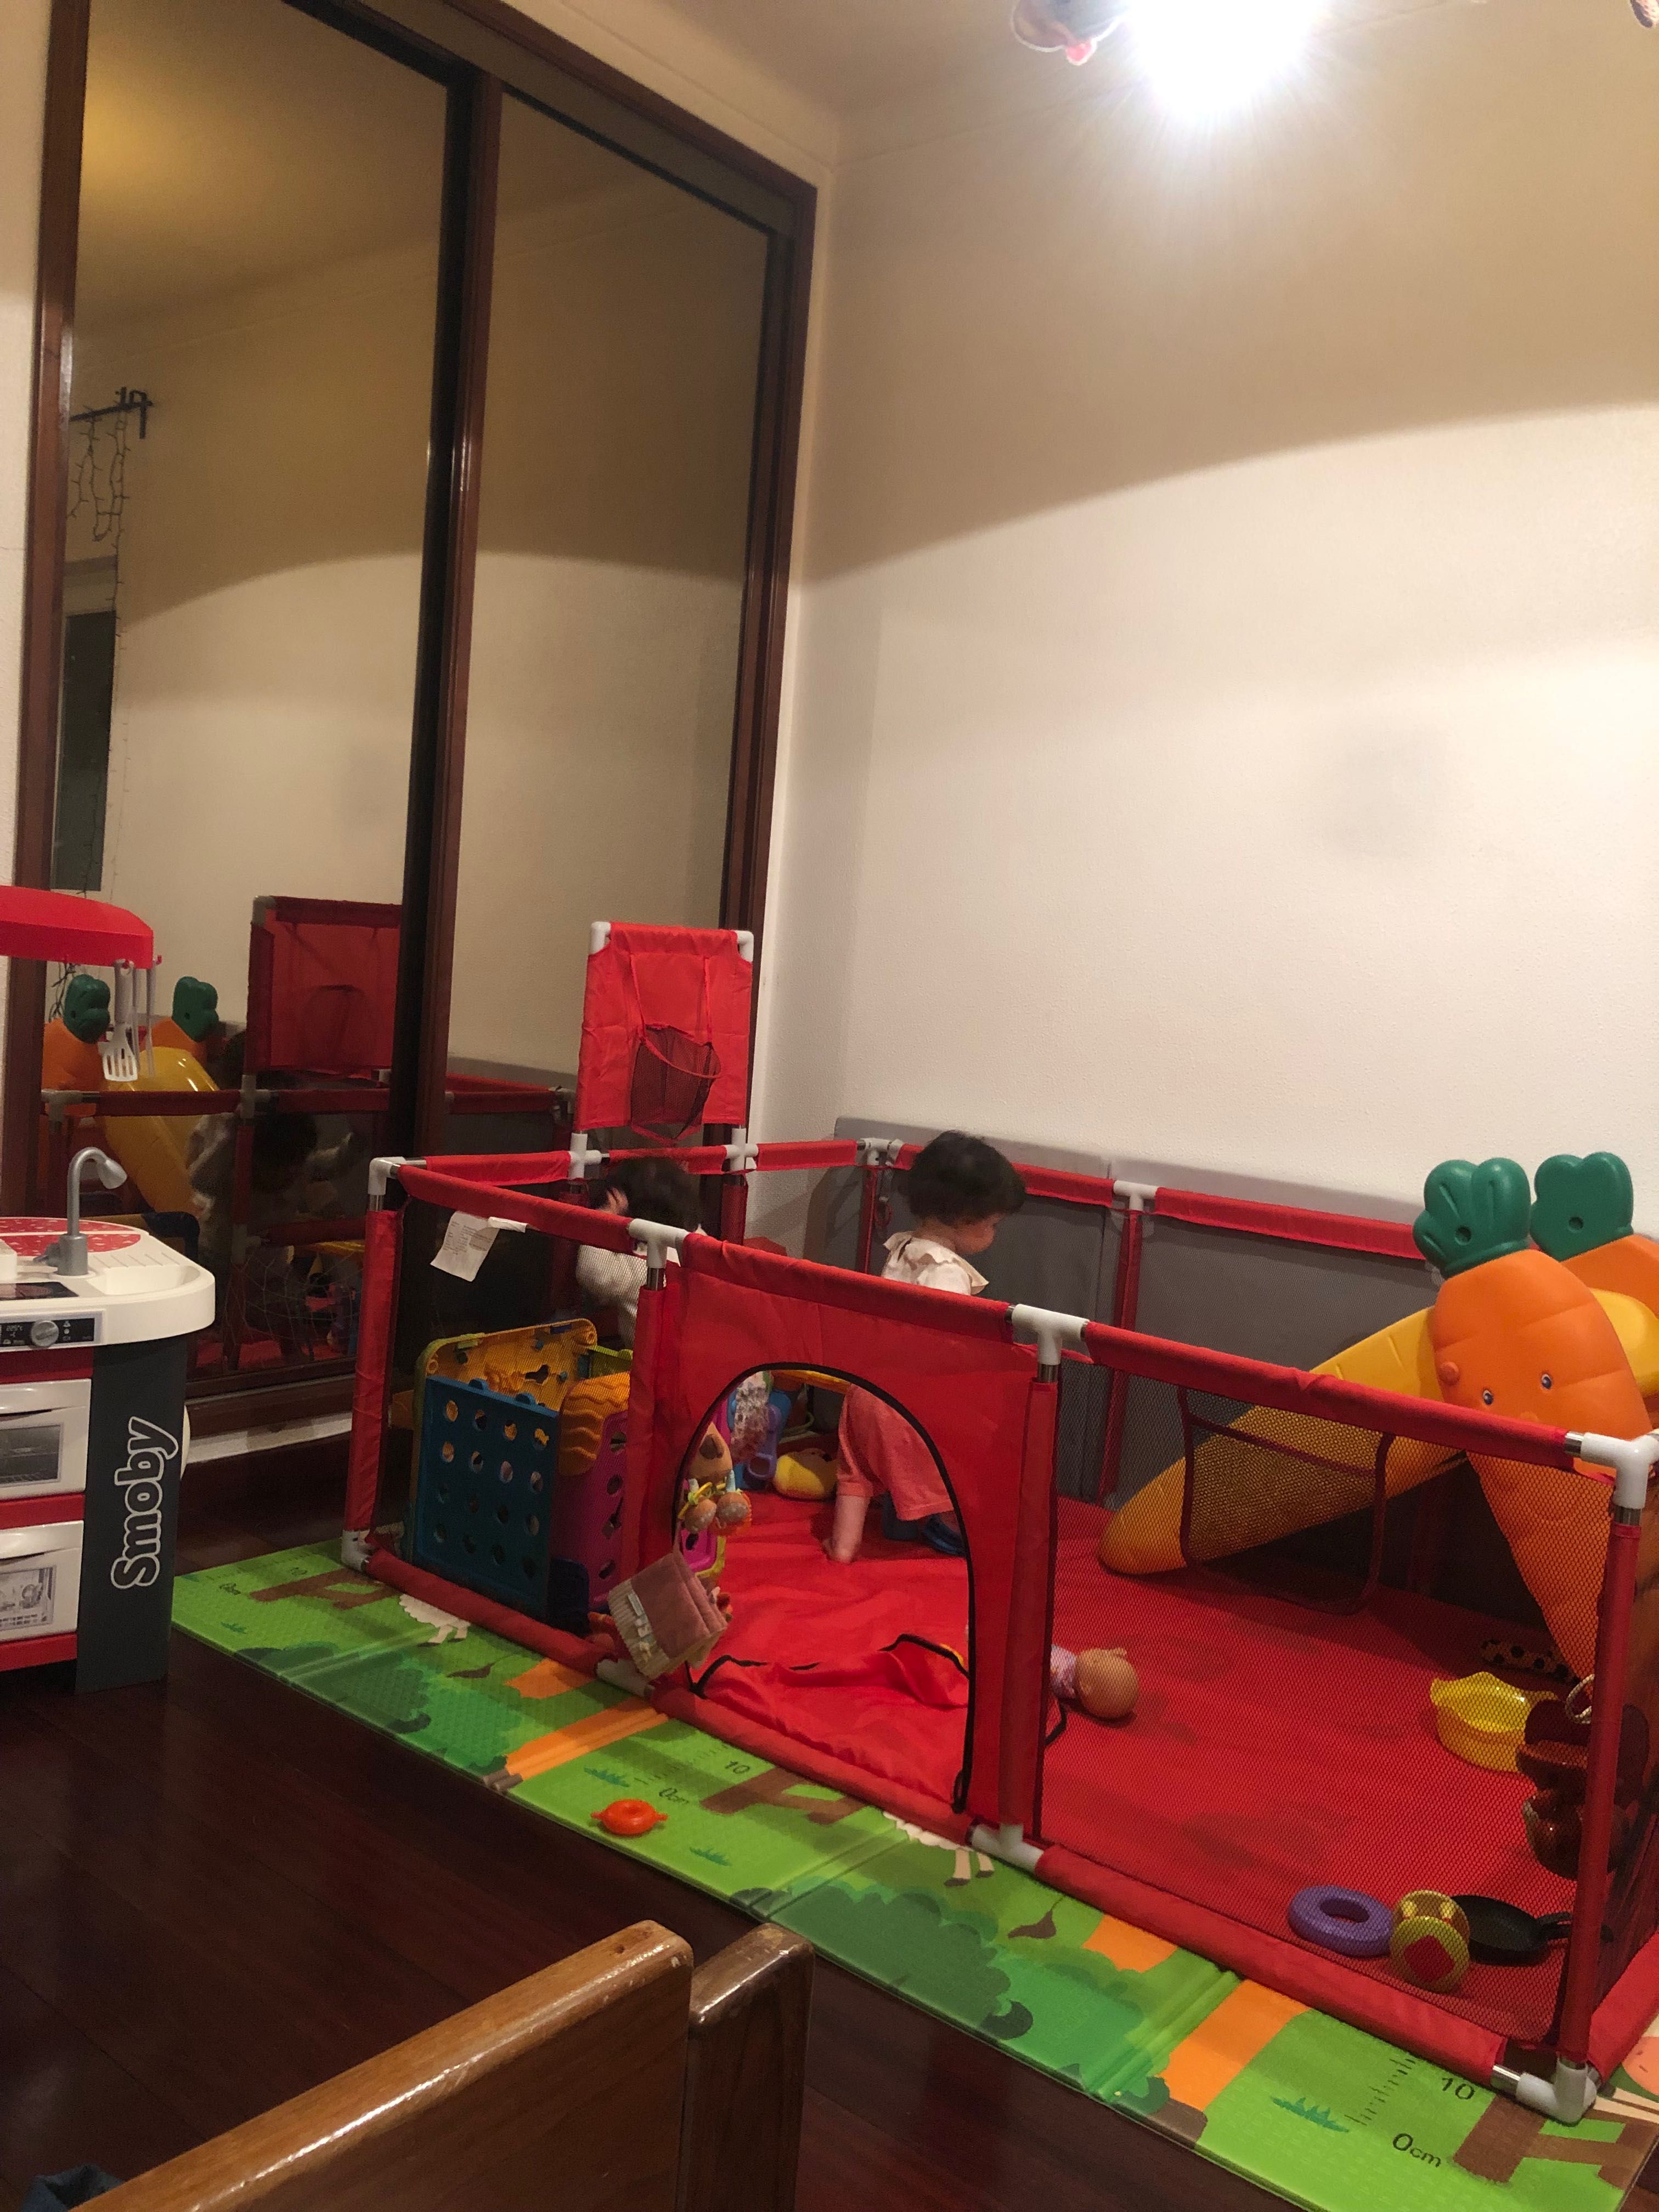 Parque Infantil Vermelho (190 x 129 x 66 cm) - com caixa